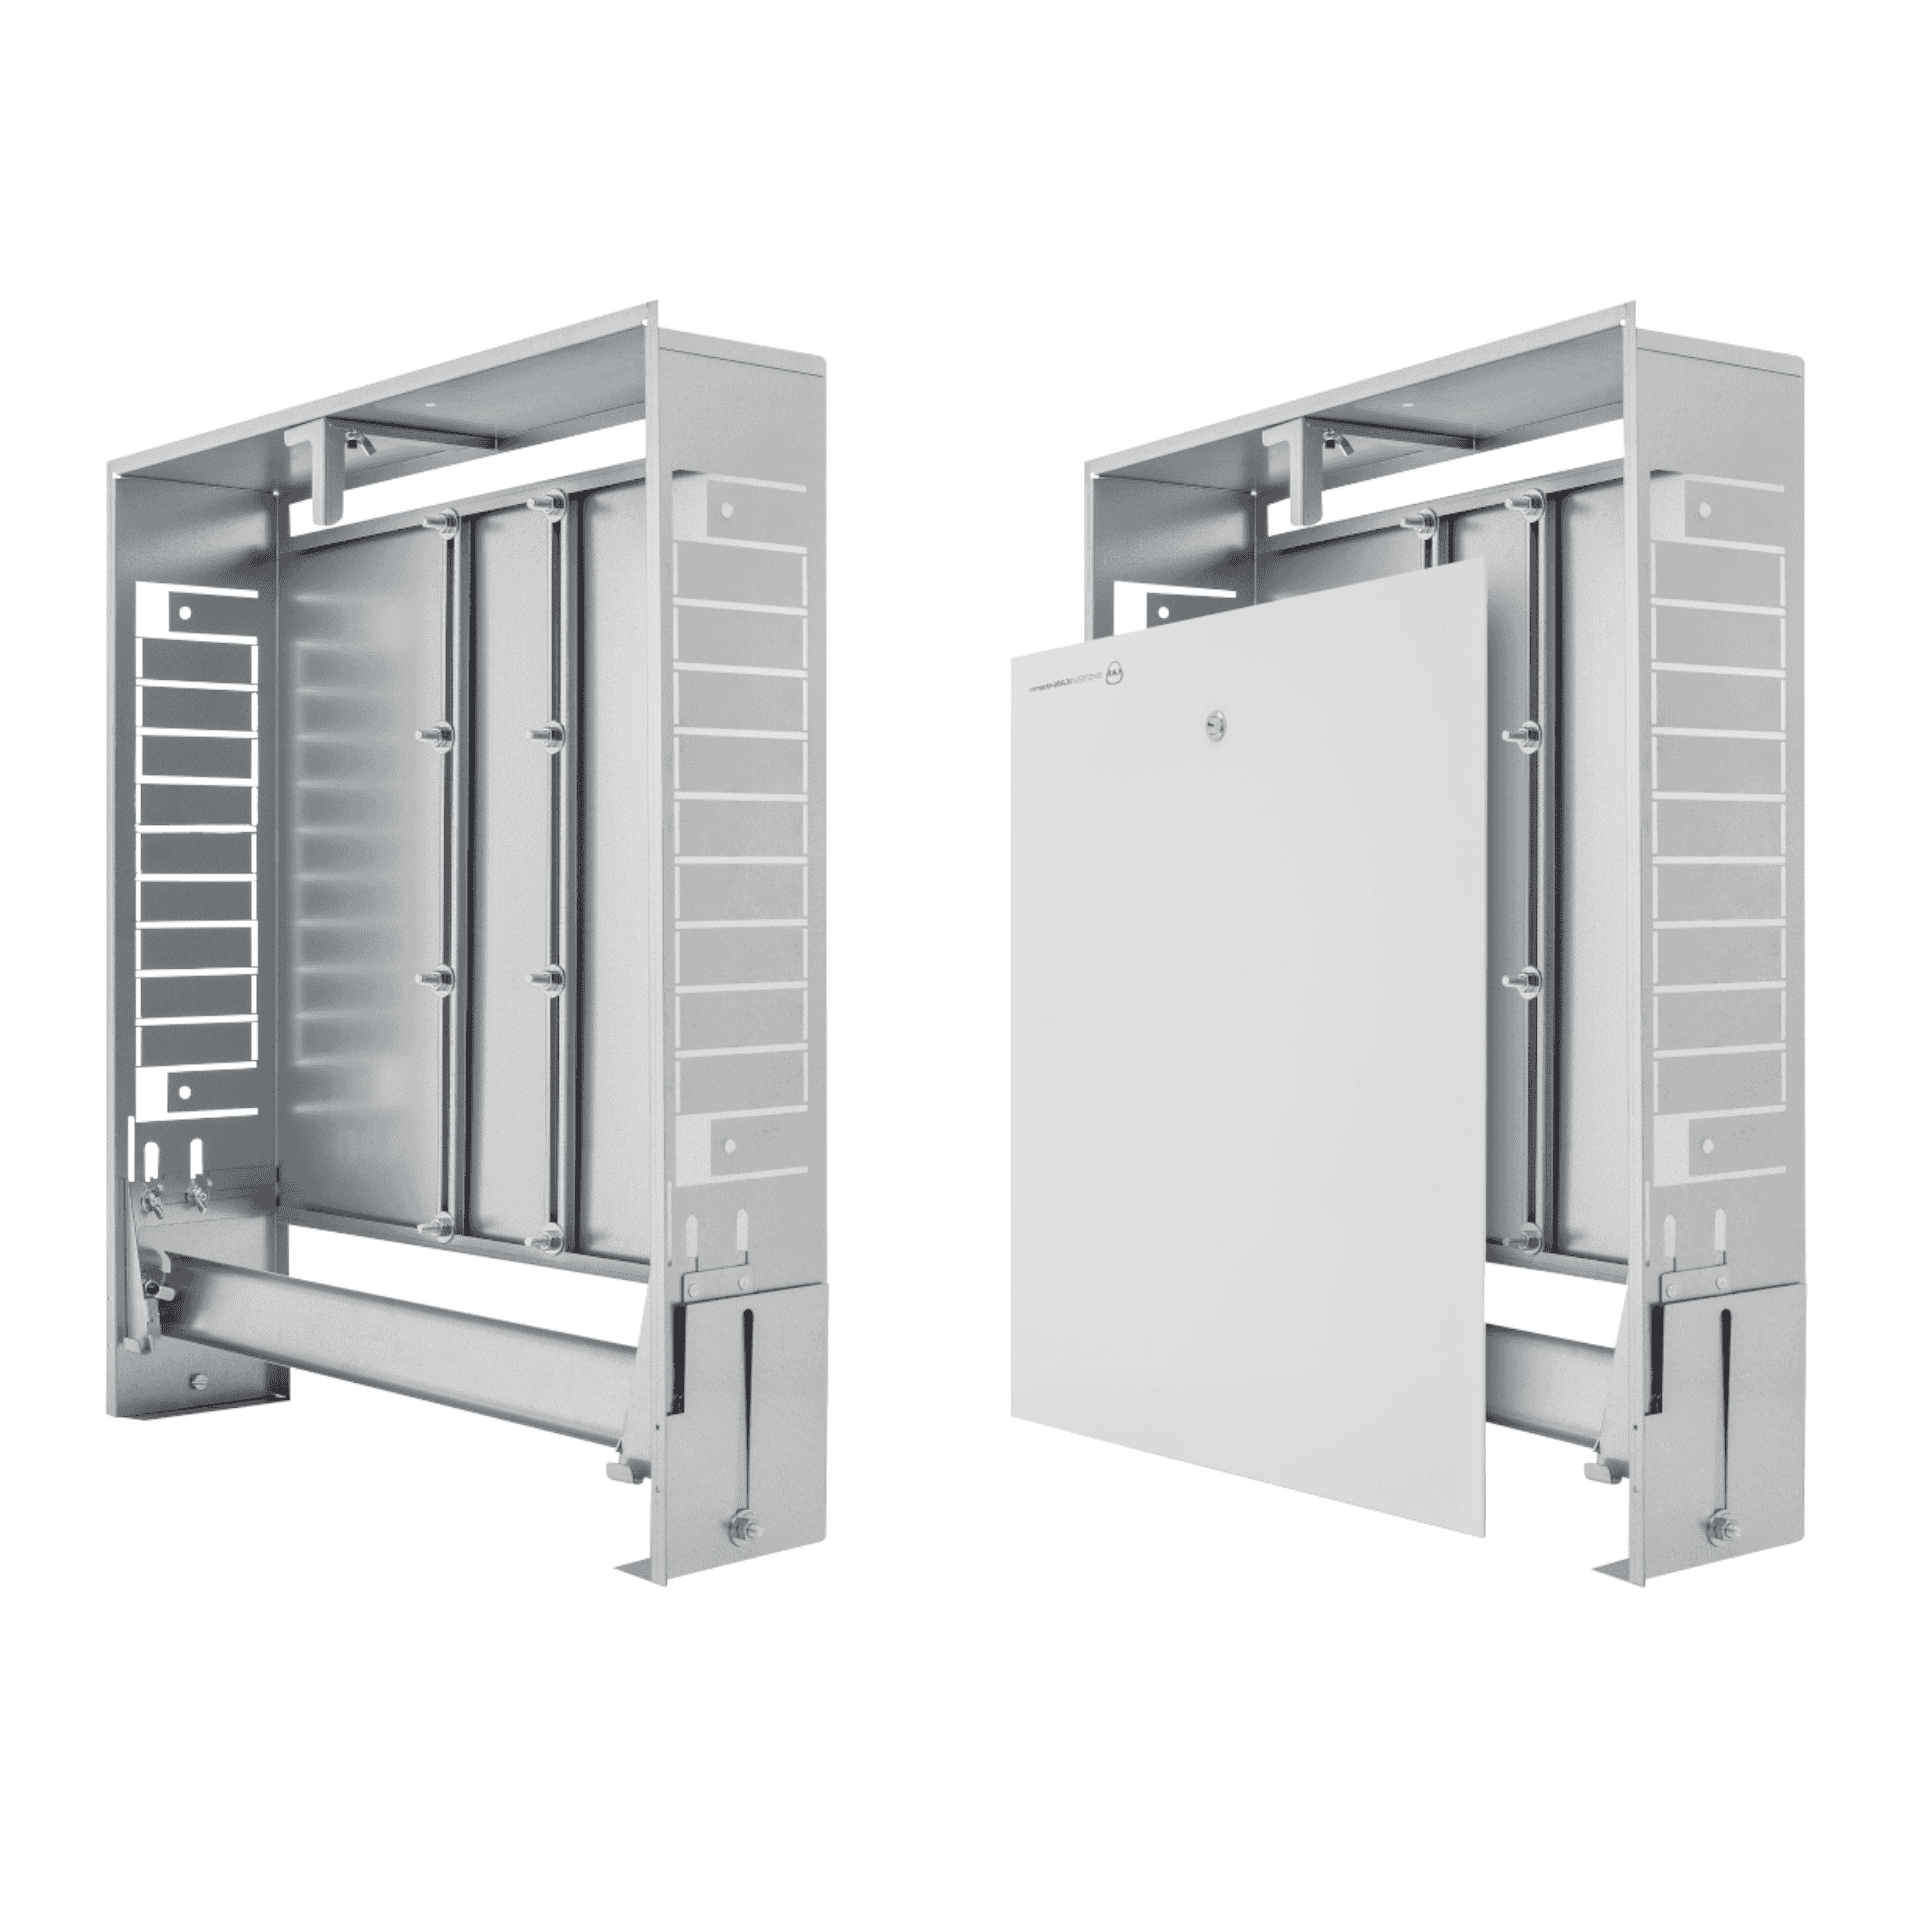 KAN-therm - Instalační skříně Slim a Slim+ - Konstrukce instalačních skříní